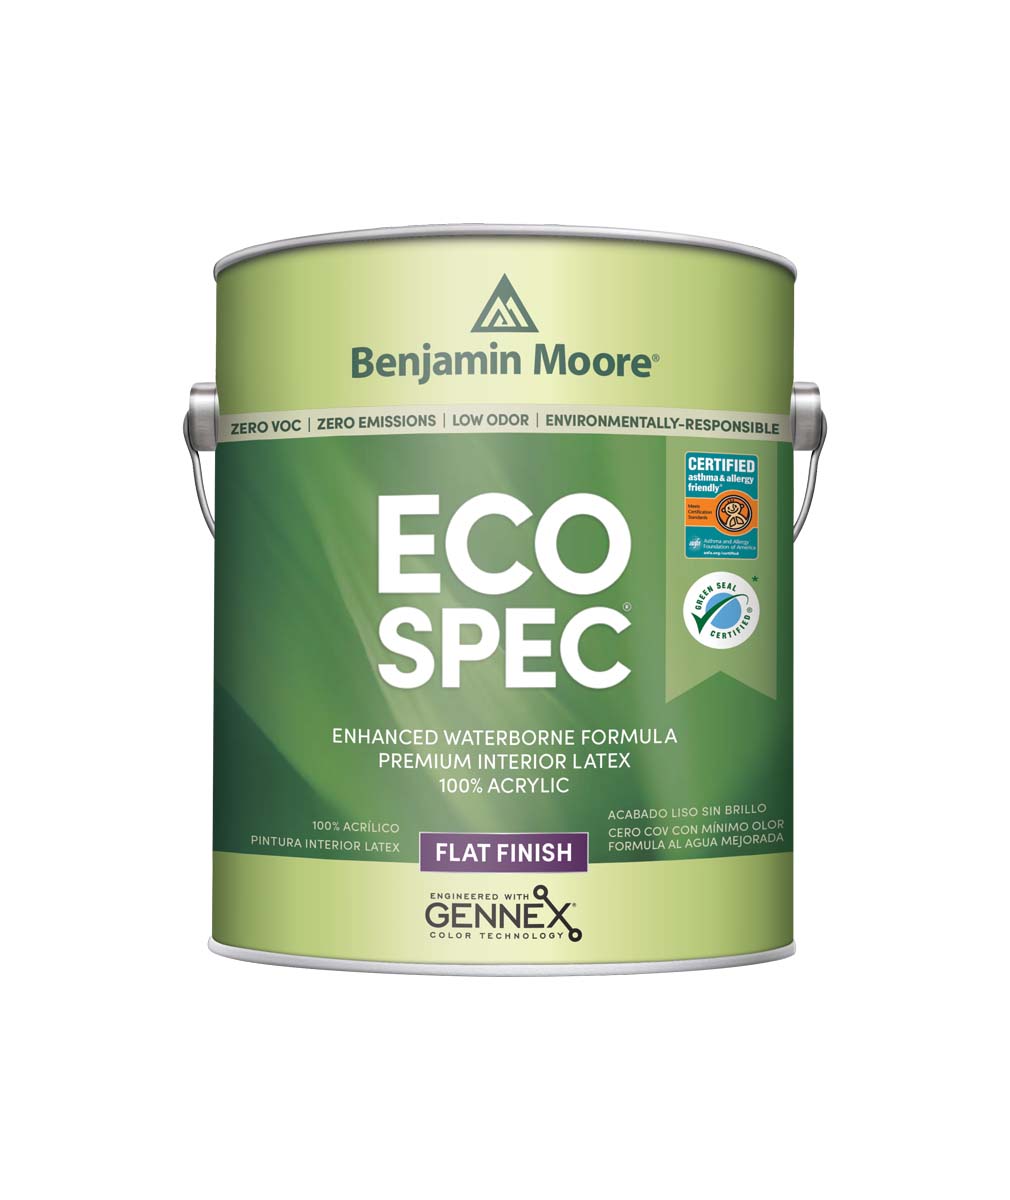 Eco Spec